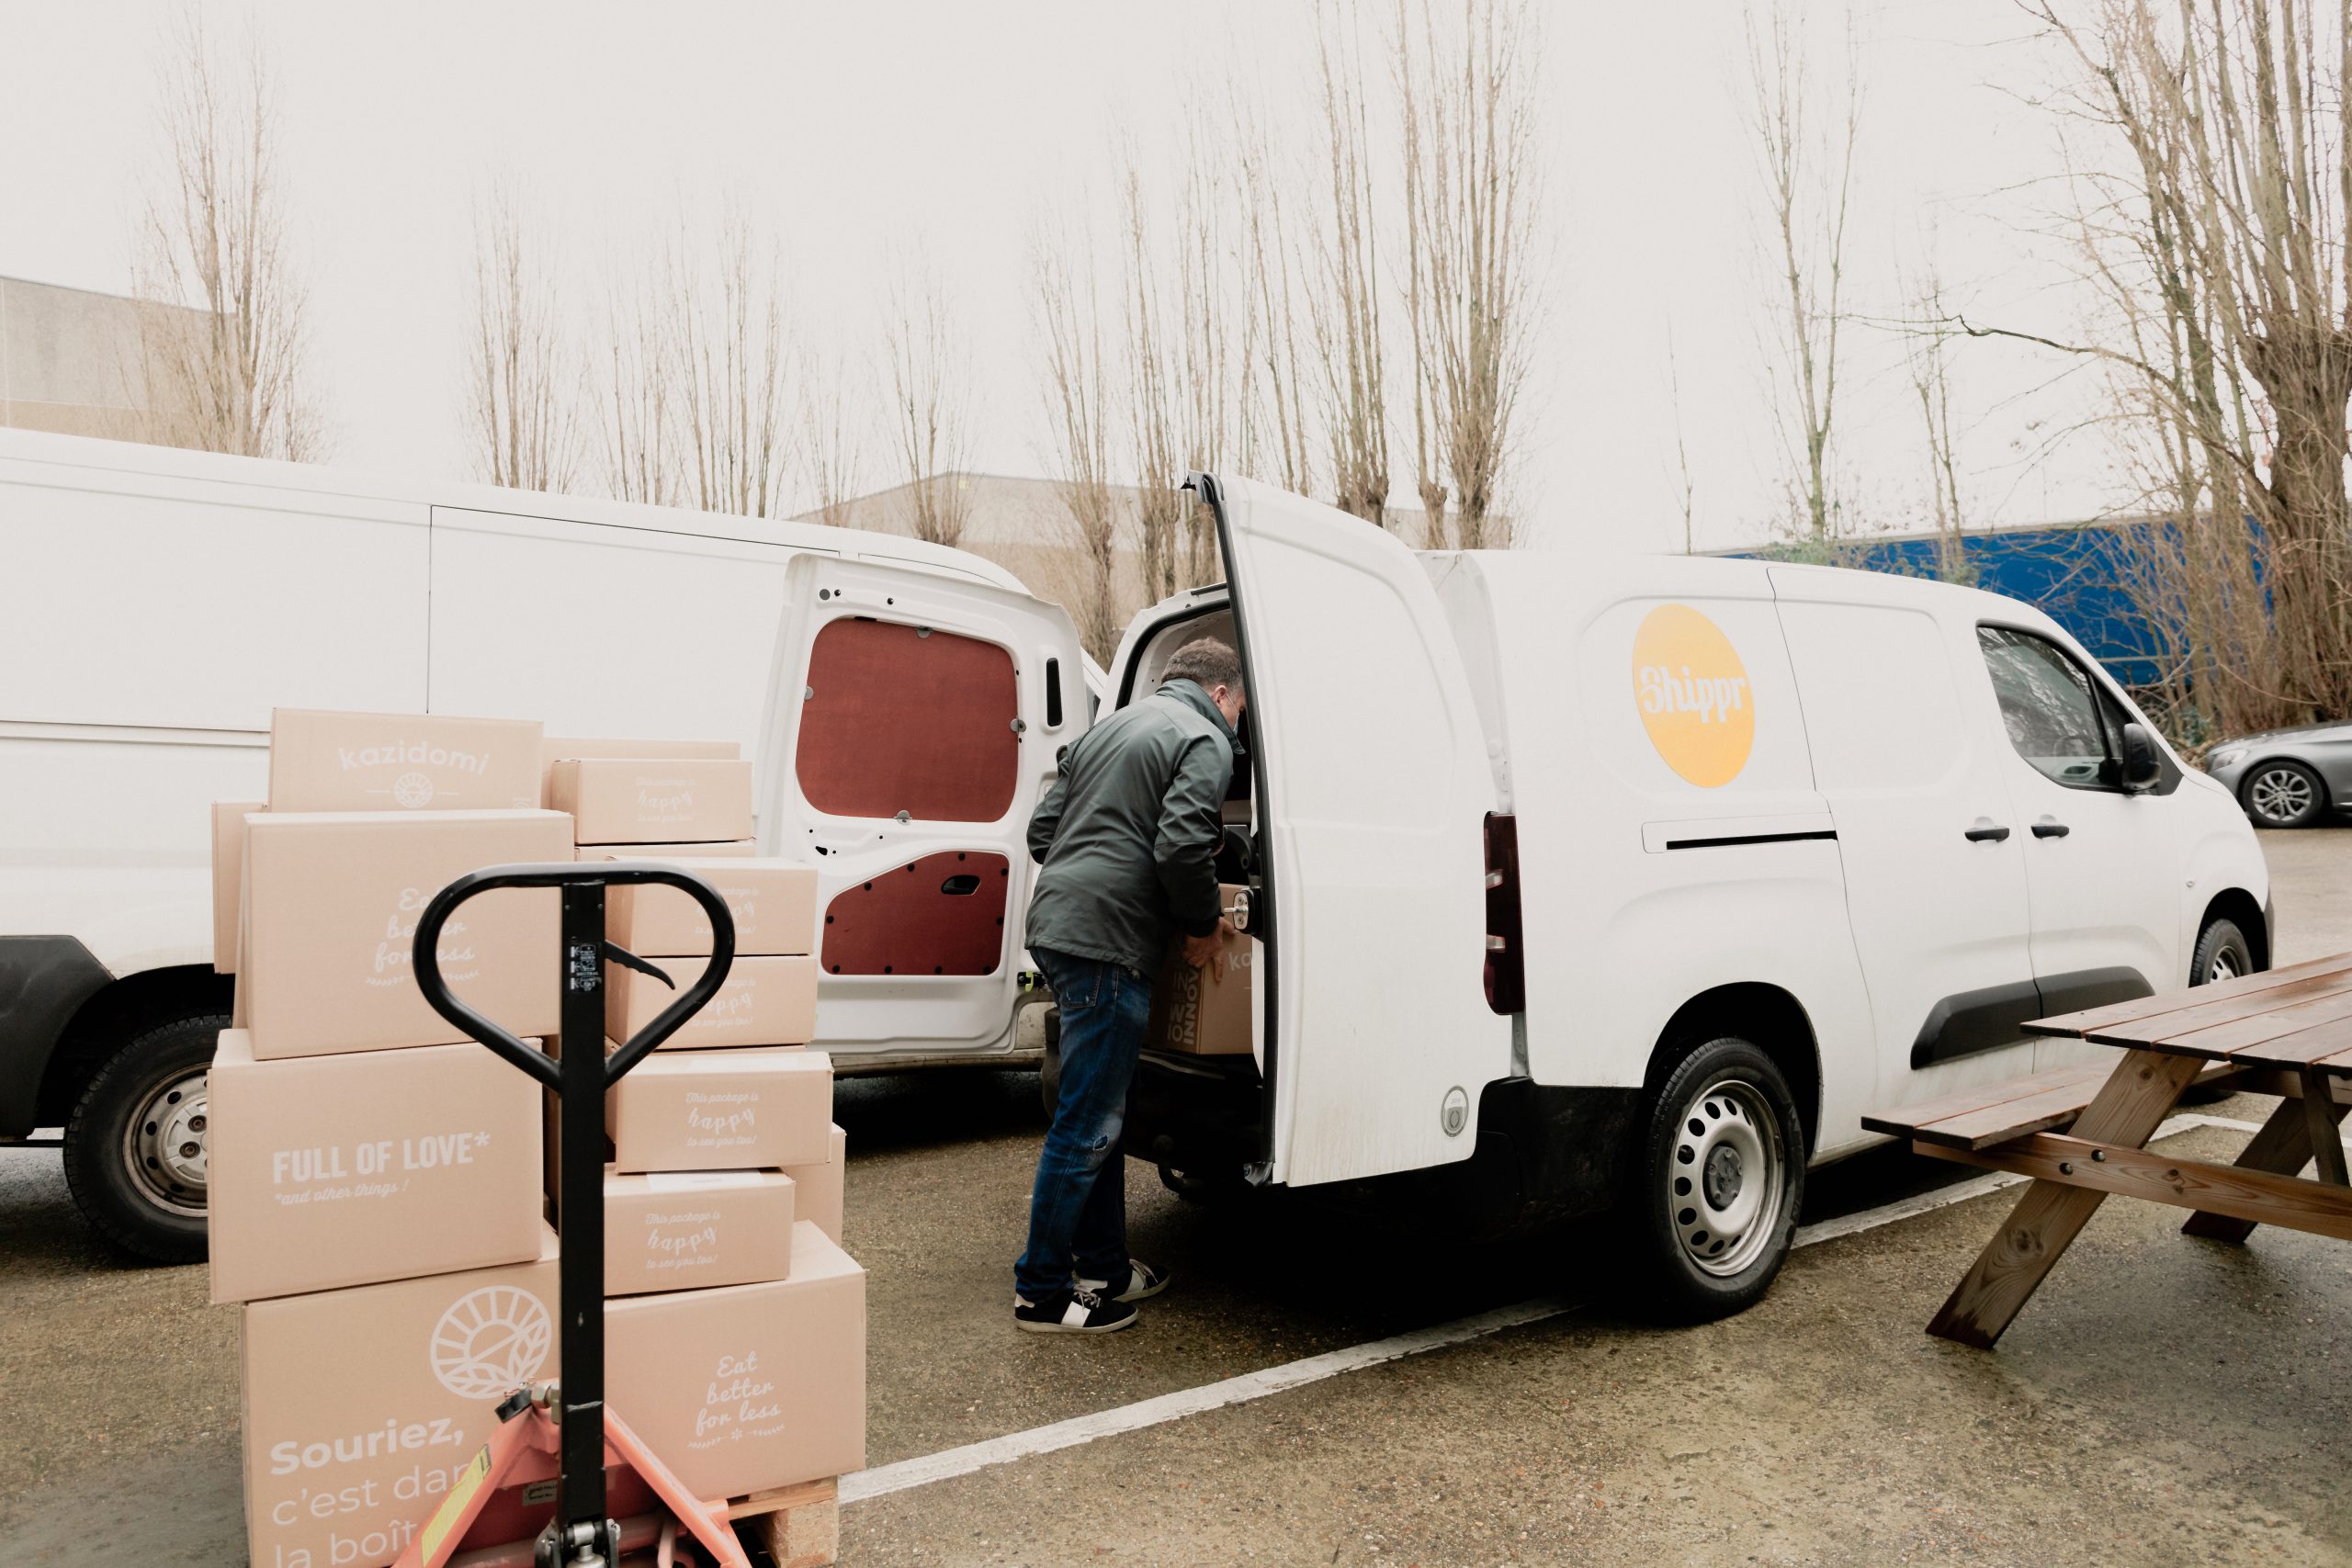 livreur posant des caisses en carton kazidomi dans sa camionnette blanche avec logo shippr